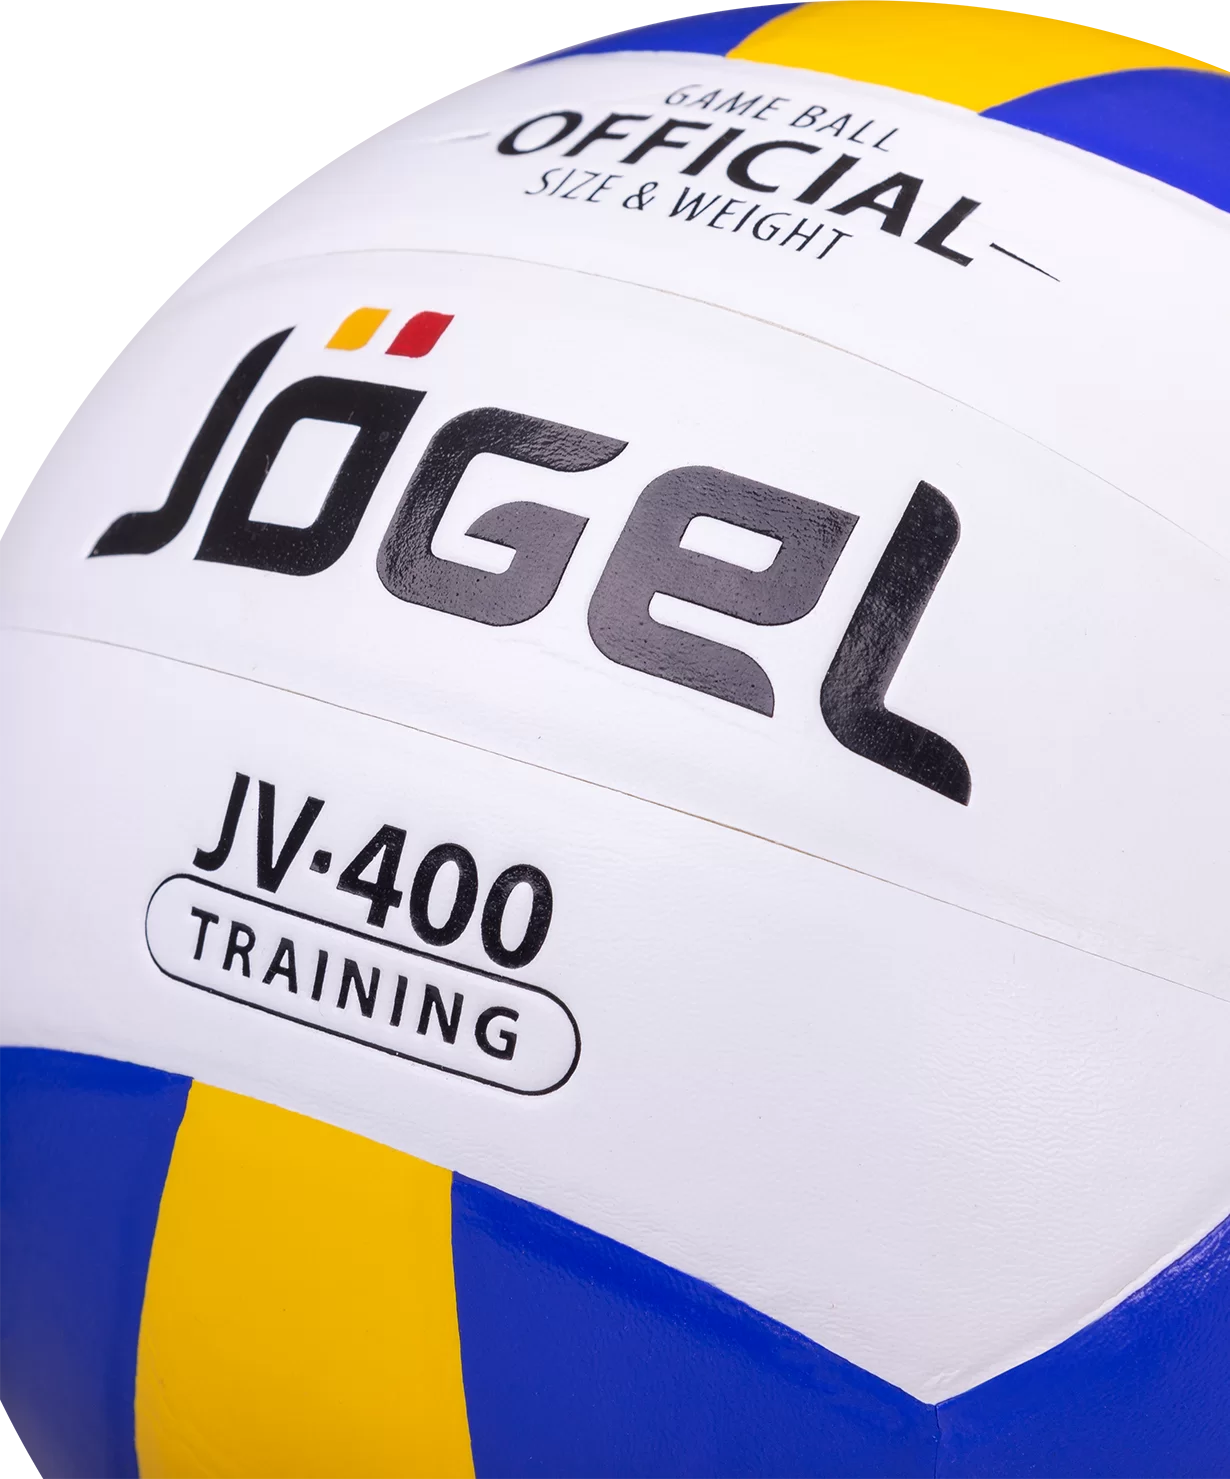 Фото Мяч волейбольный Jogel JV-400 9341 со склада магазина СпортСЕ